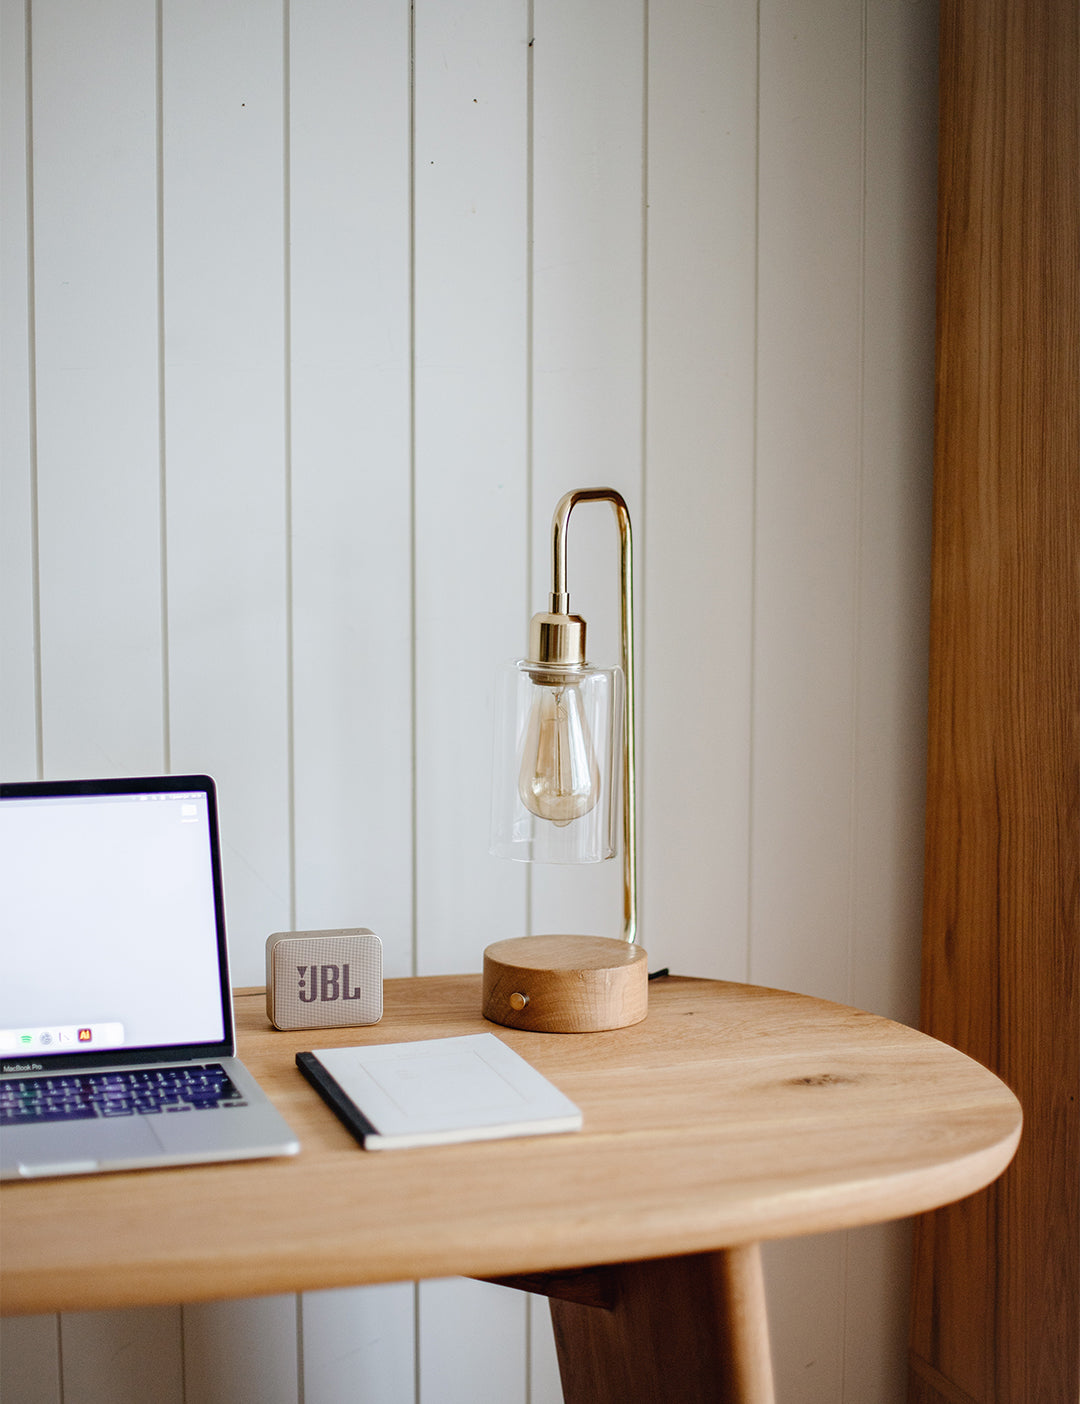 Fener Desk Lamp